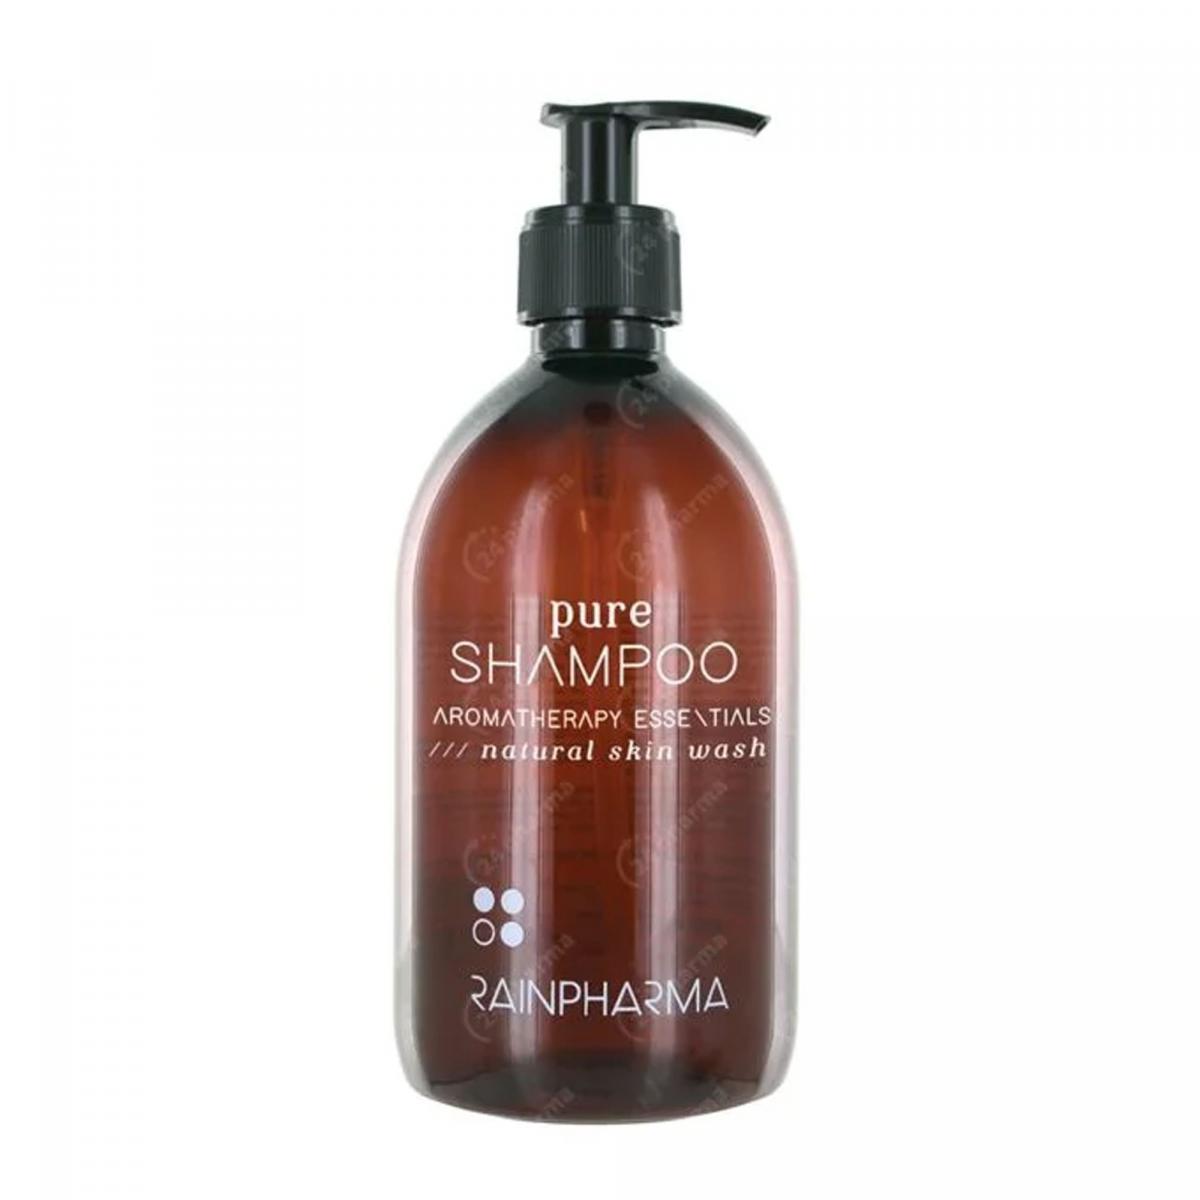 Pure shampoo